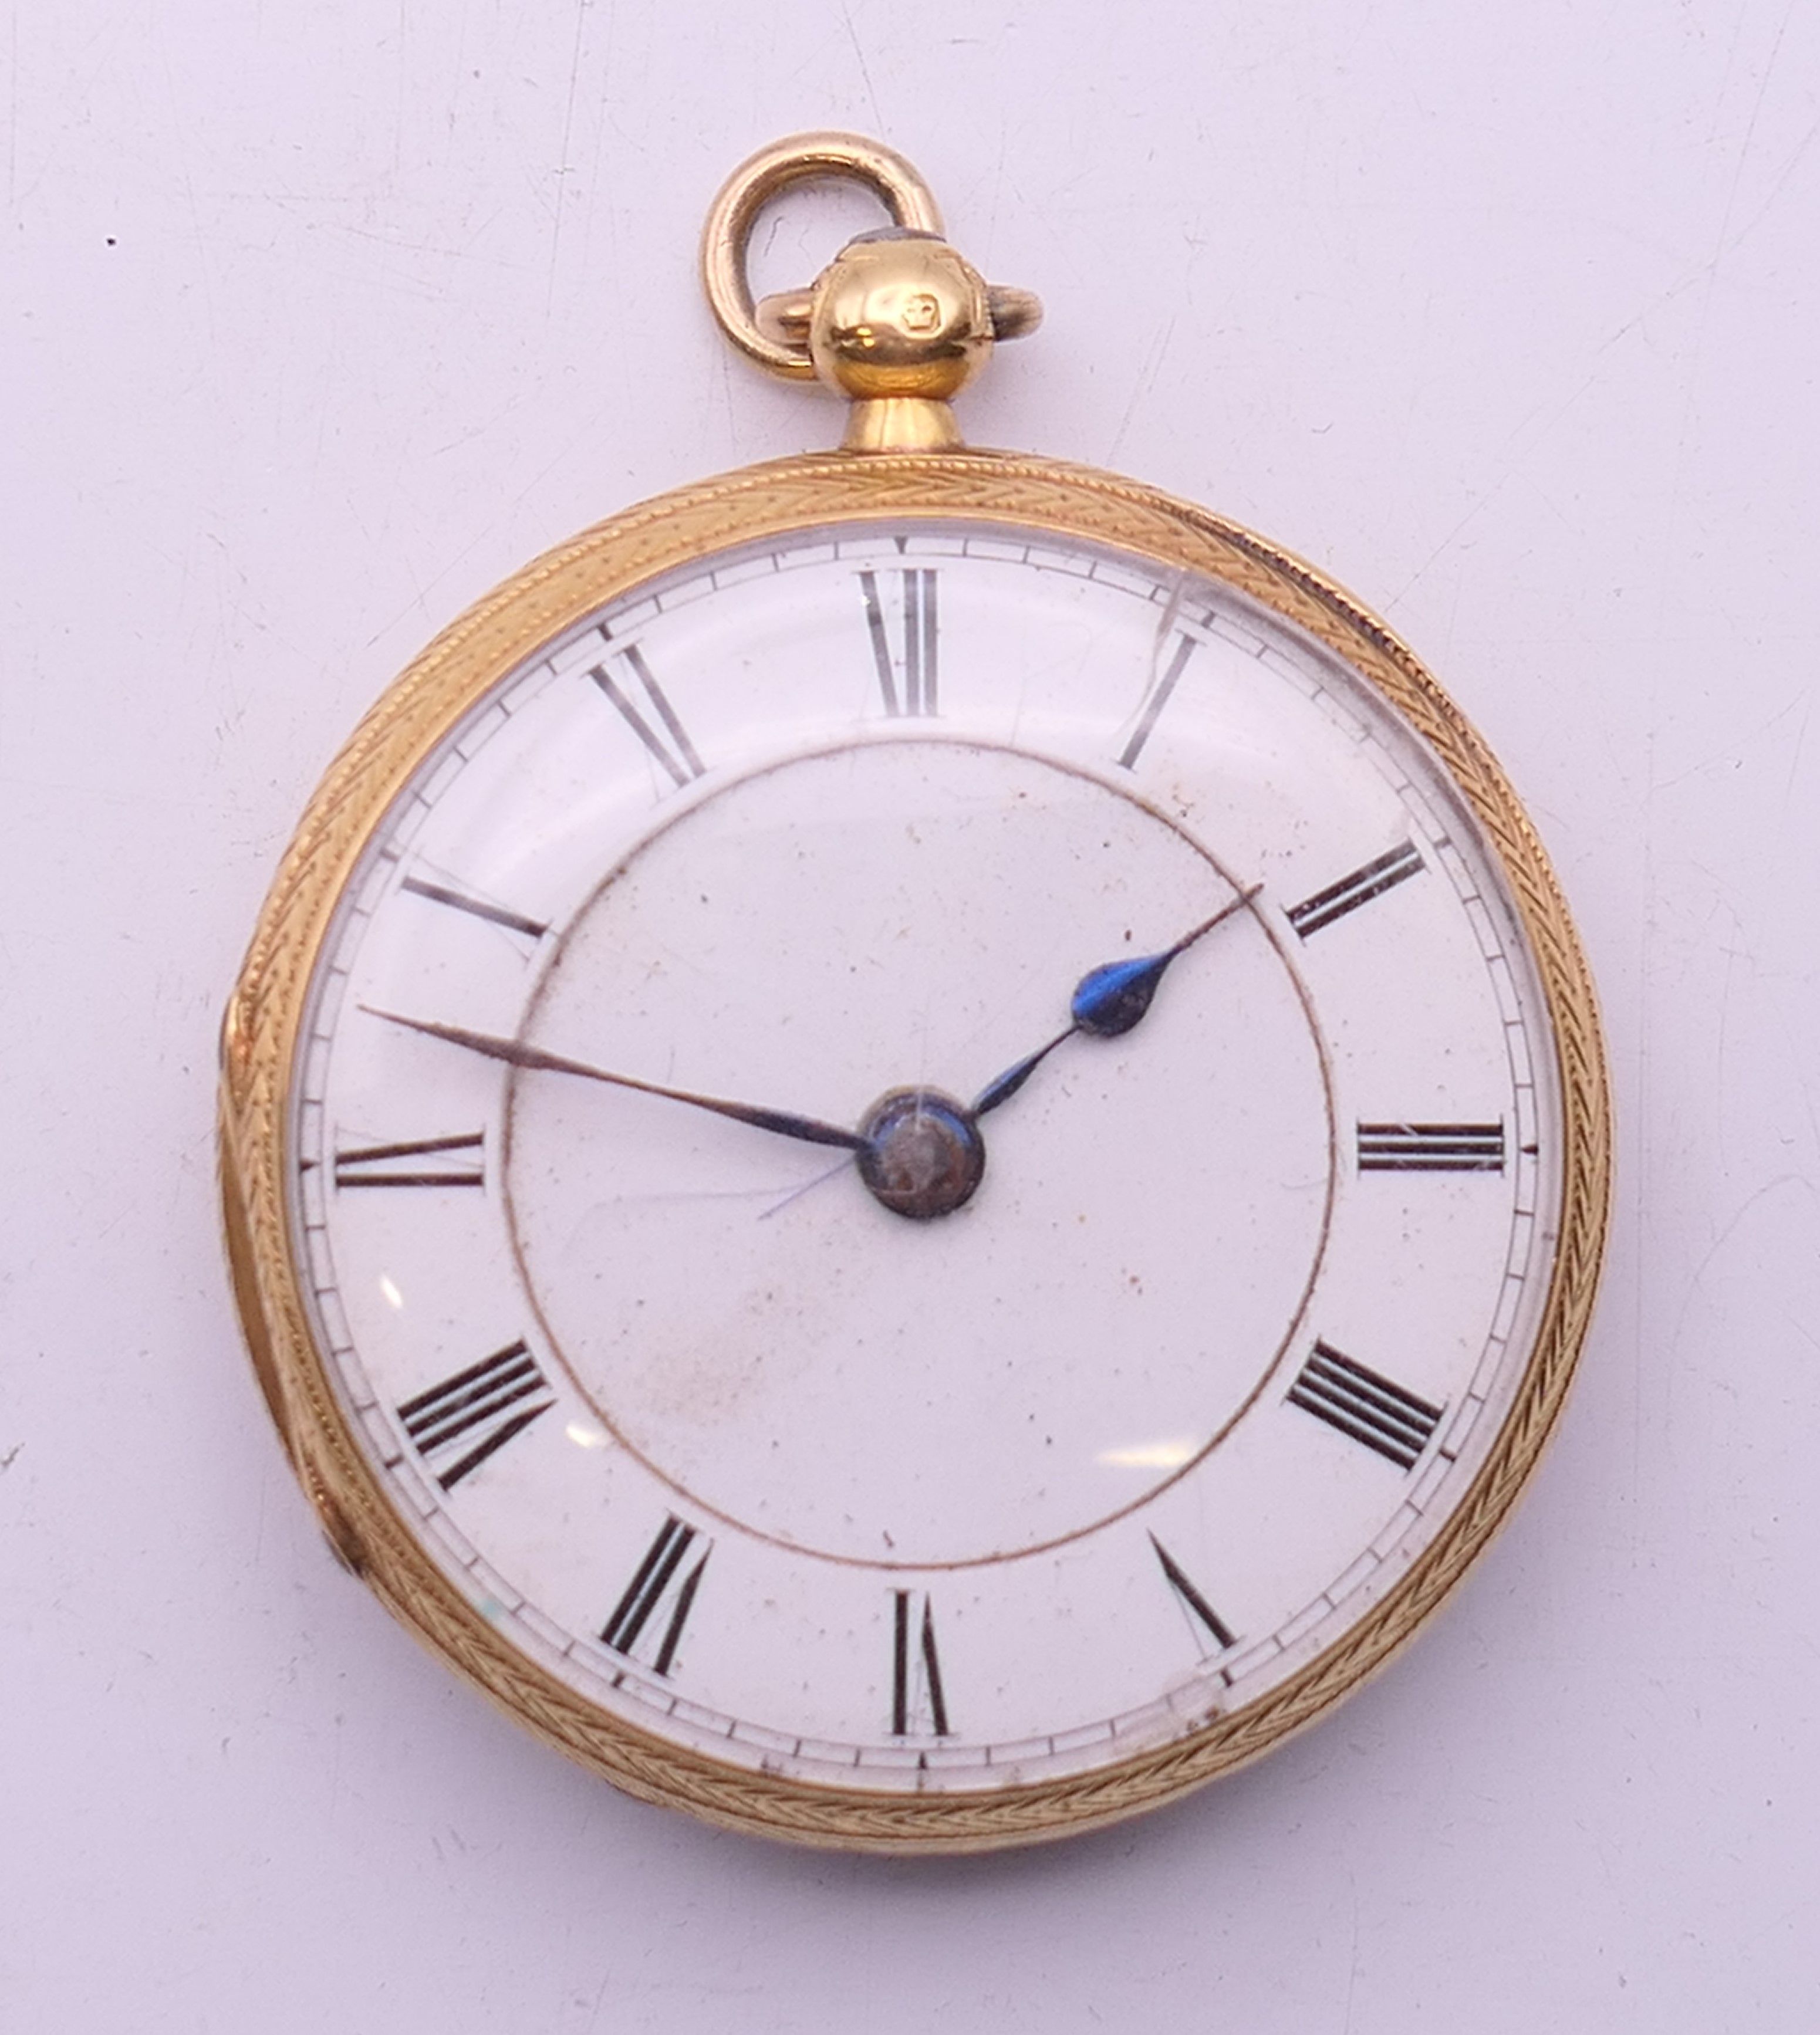 An 18 K gold open-faced pocket watch. 4 cm diameter. 61.8 grammes total weight.